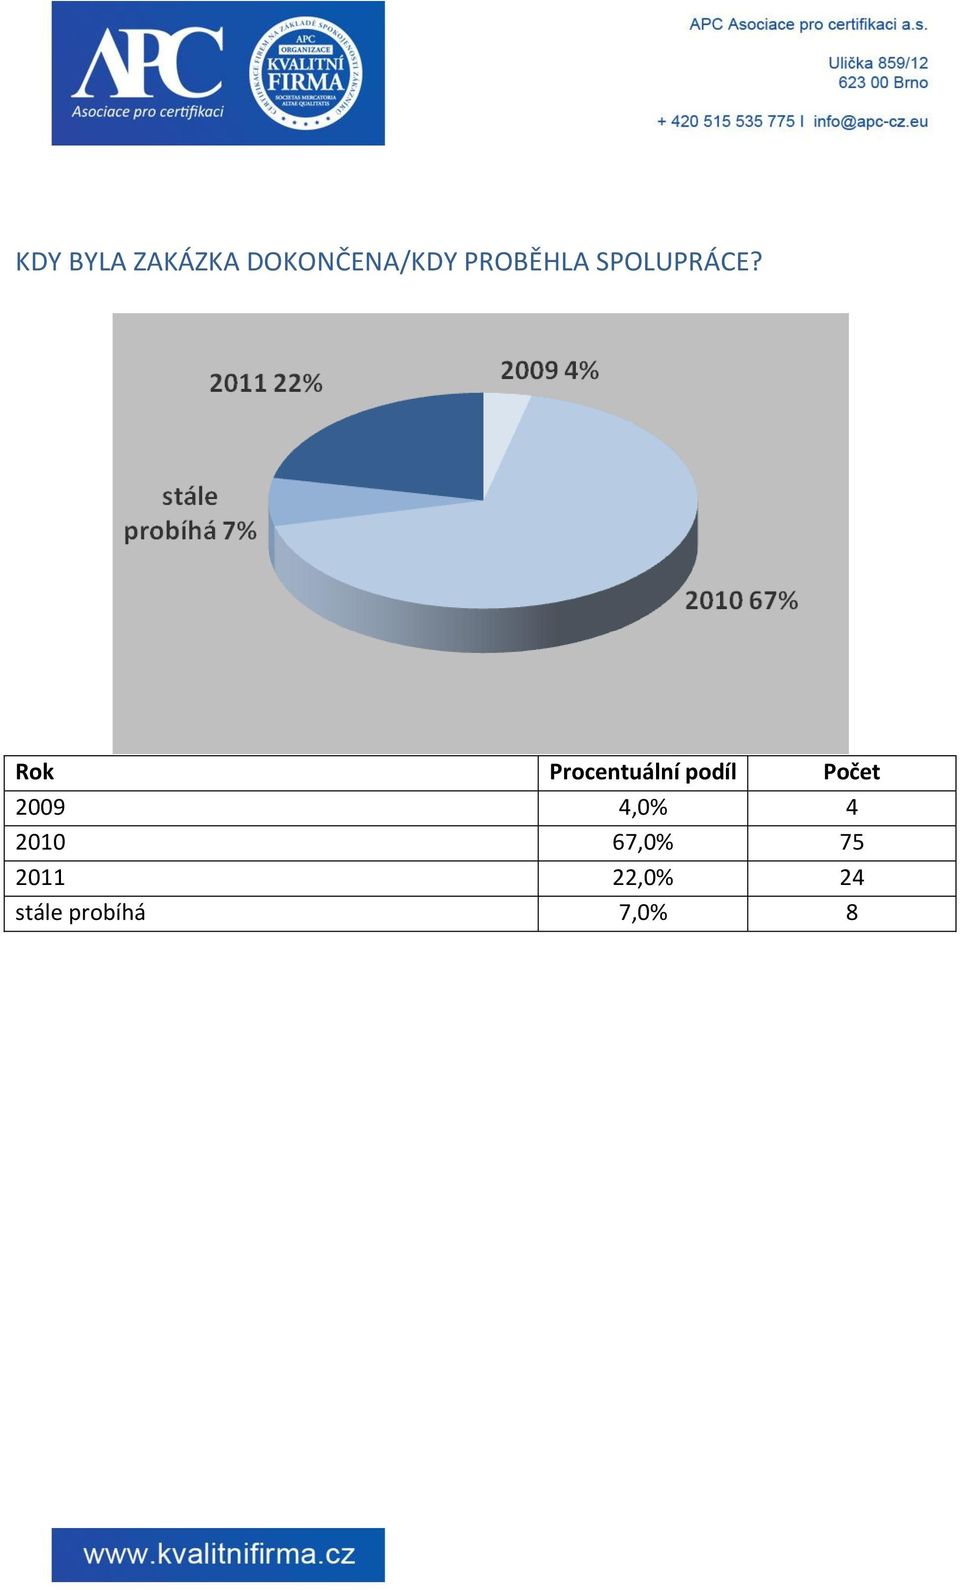 Rok Procentuální podíl Počet 2009